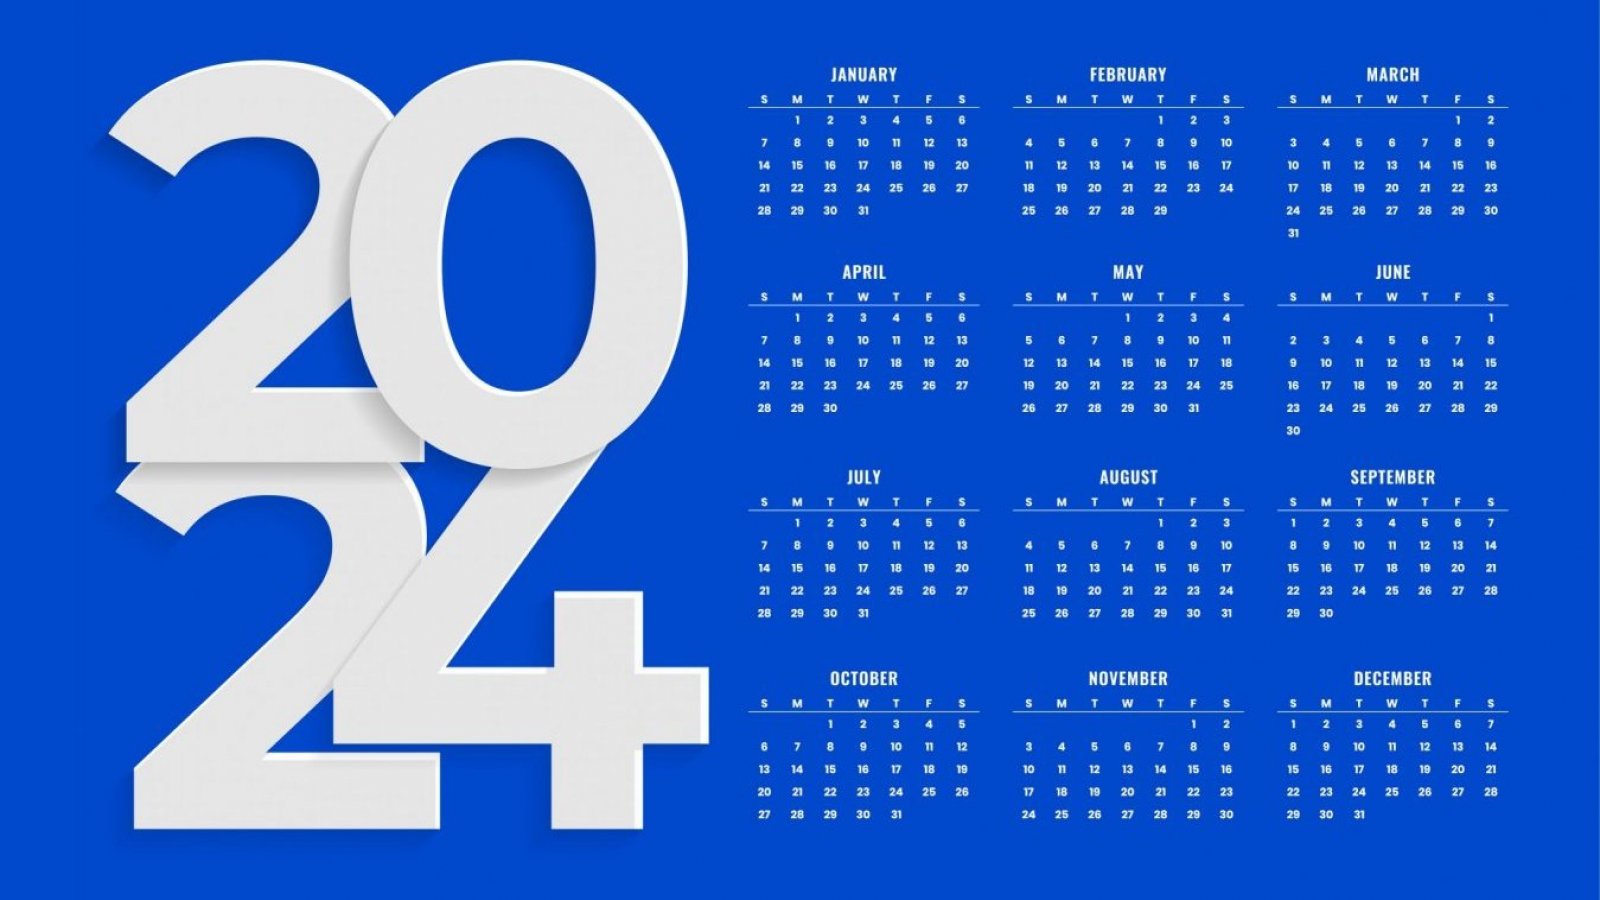 2024 Calendario en Español Calendario 2024 Español 2024 Calendario